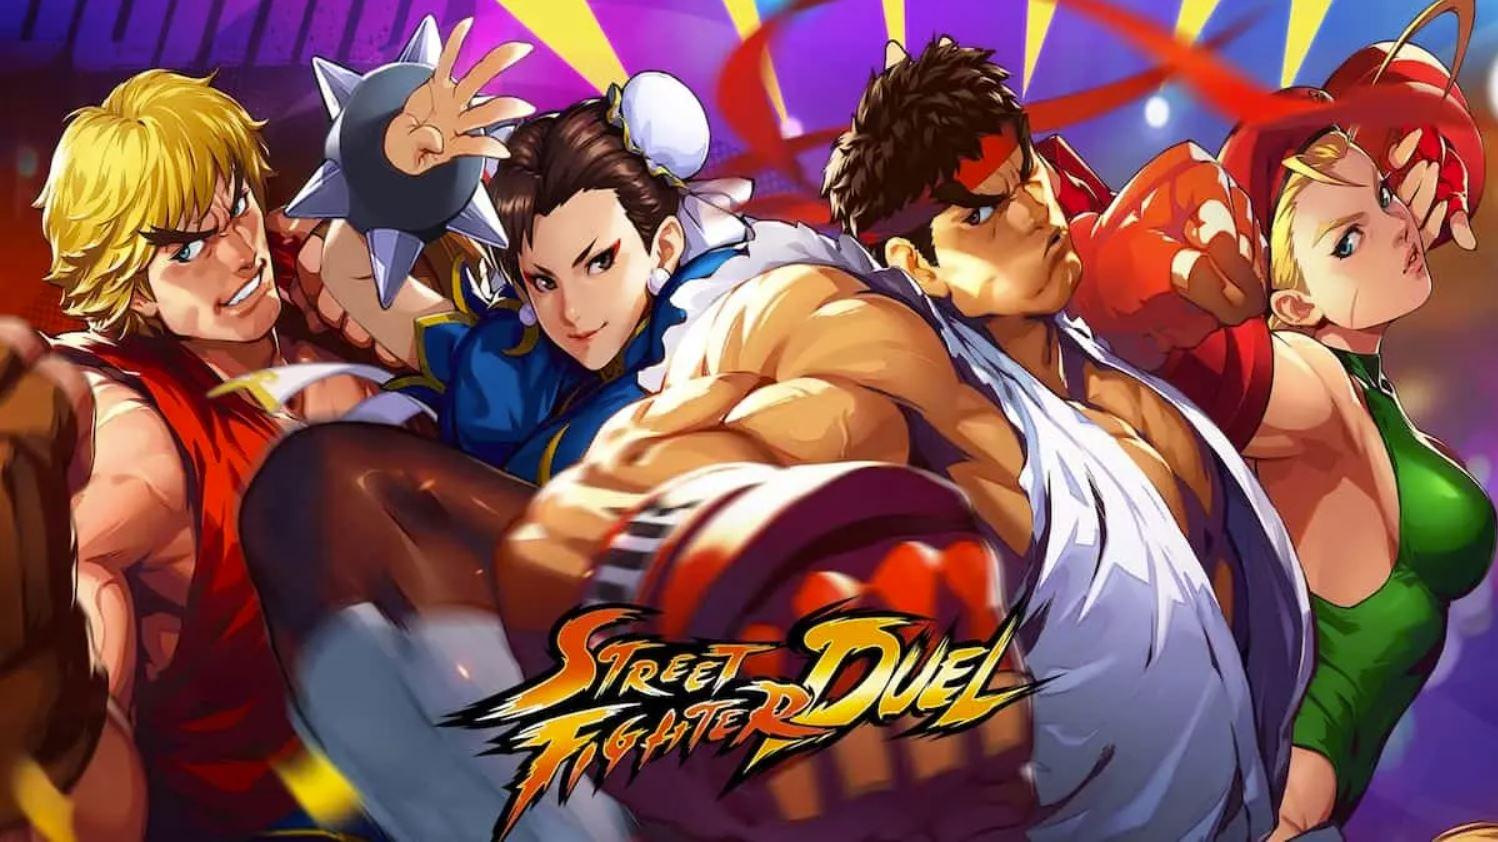 Street Fighter duel mobile rpg capcom arabgamerz عرب جيمرز ستريت فايتر دول موبايل